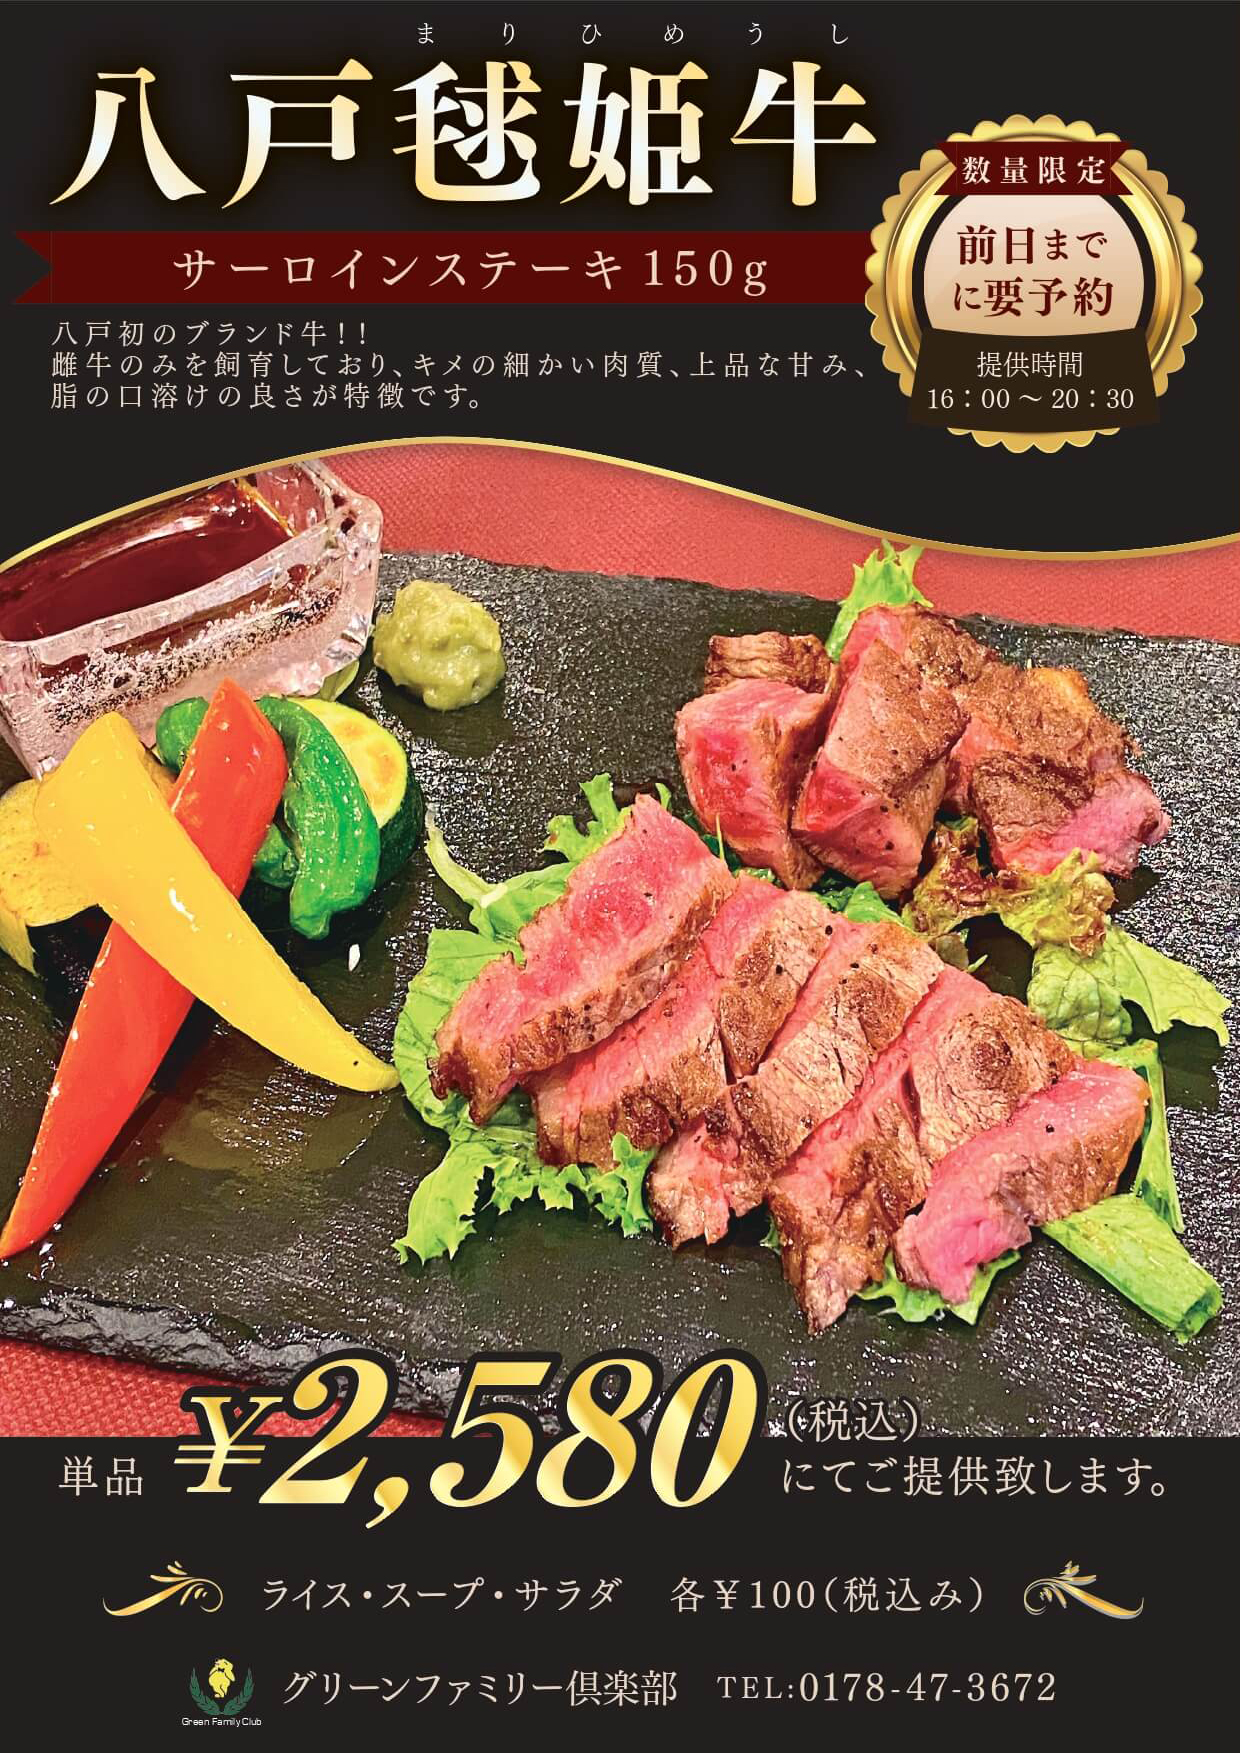 八戸毬姫牛 サーロインステーキ150g 毎月15日5食限定 予約不可 セットで1,800円にてご提供